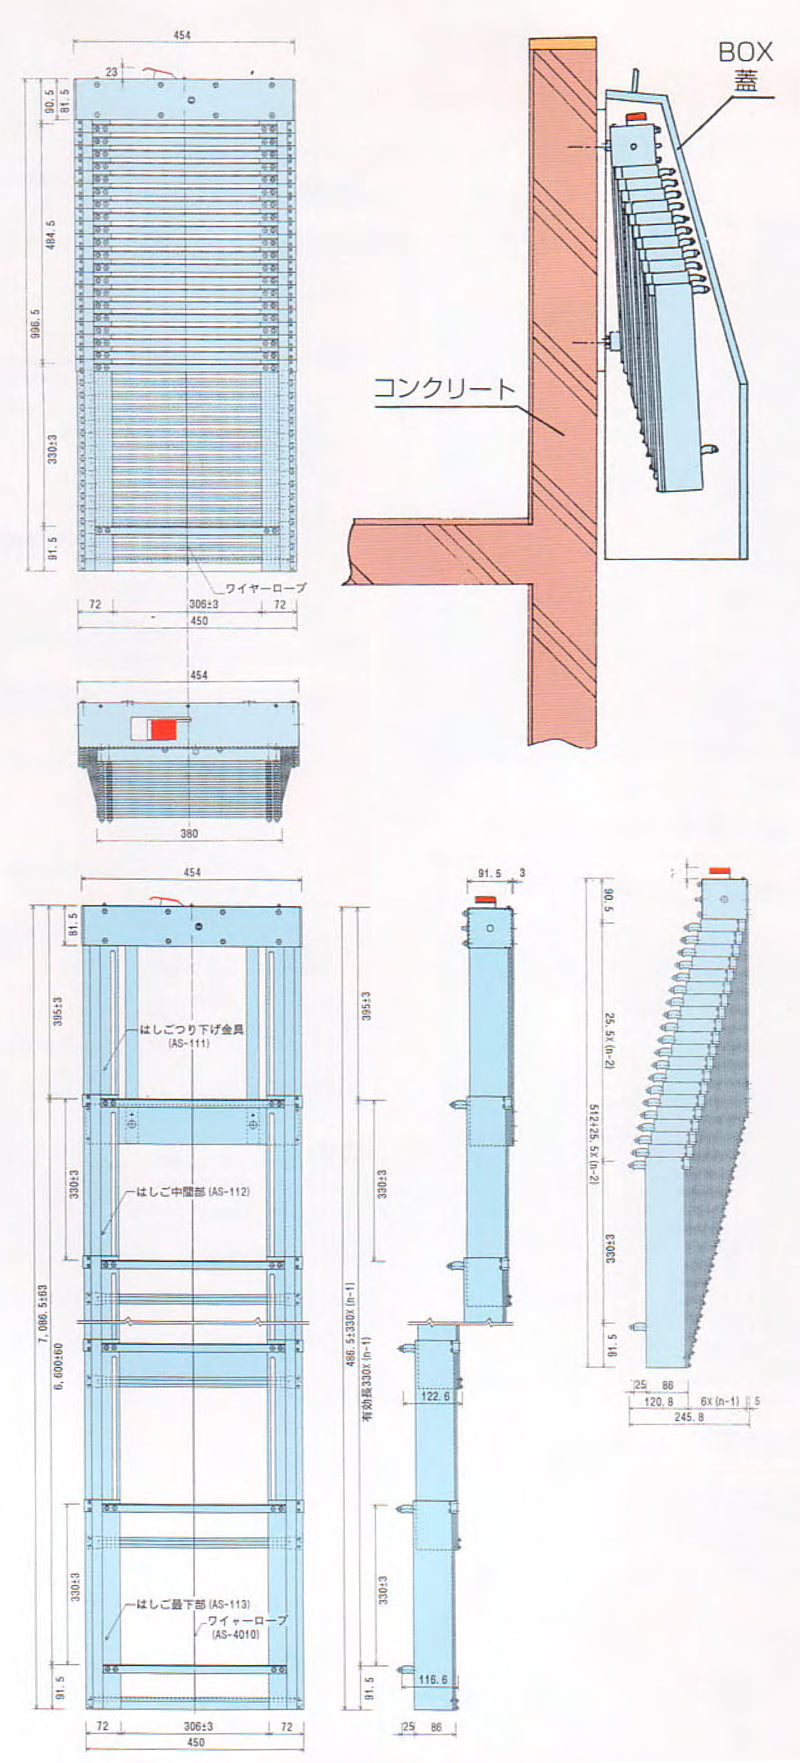 ORIRO SOS 7型 避難はしご収納BOXセット。柱状の縦棒で構成。揺れが少なく、安定した足元を確保。設置可能範囲の高さ 7,550mmまで